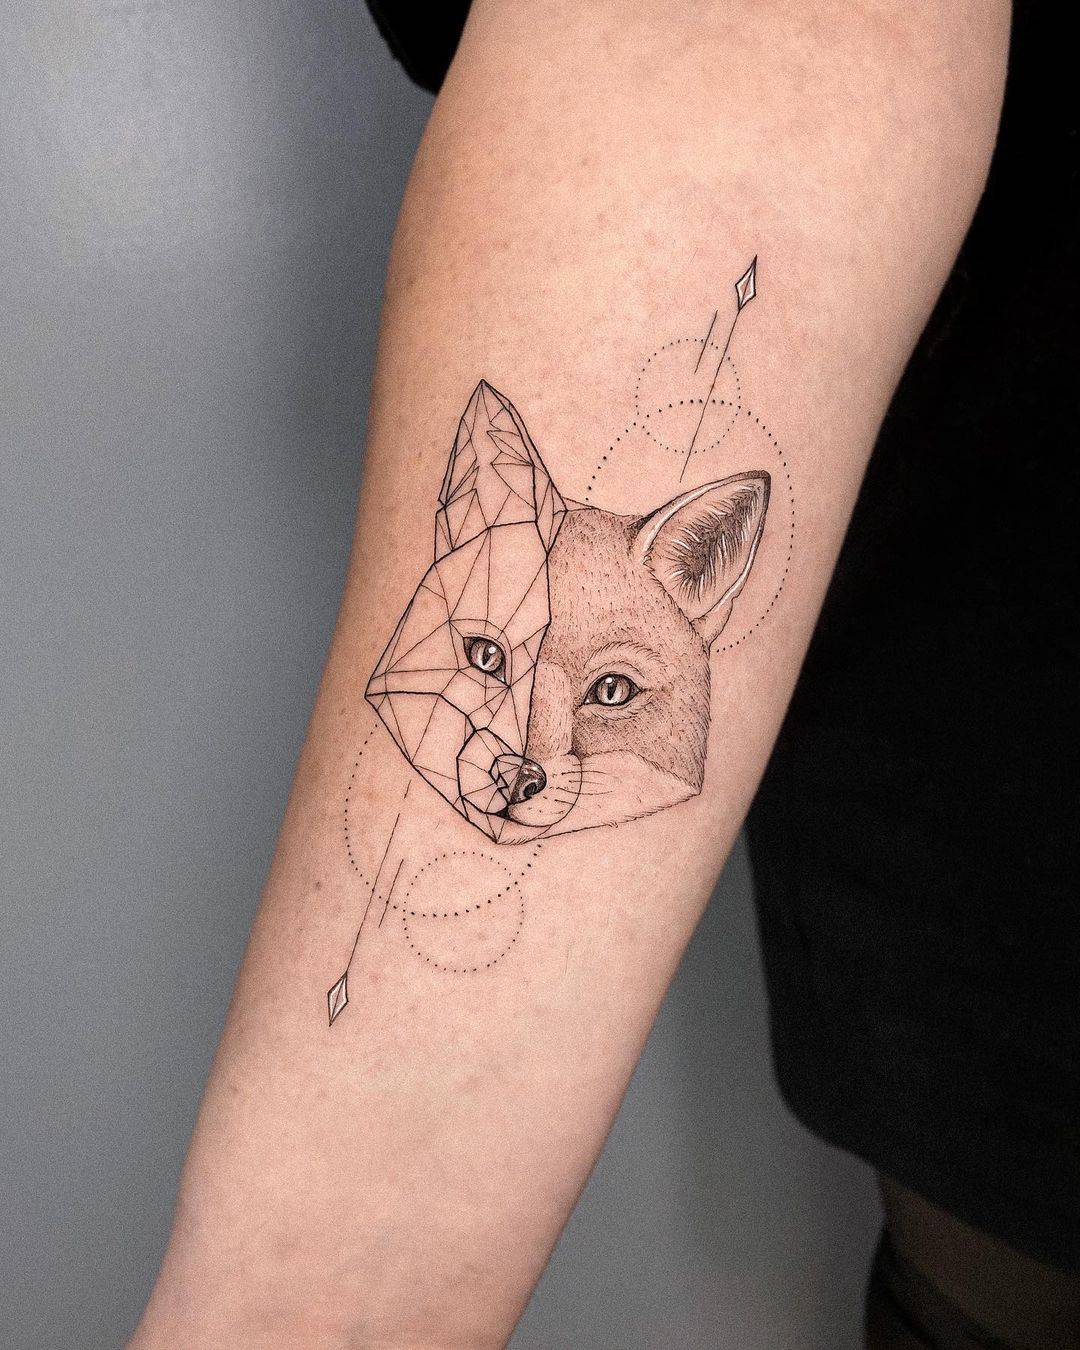 Geometric fox on lower arm by gayagatto